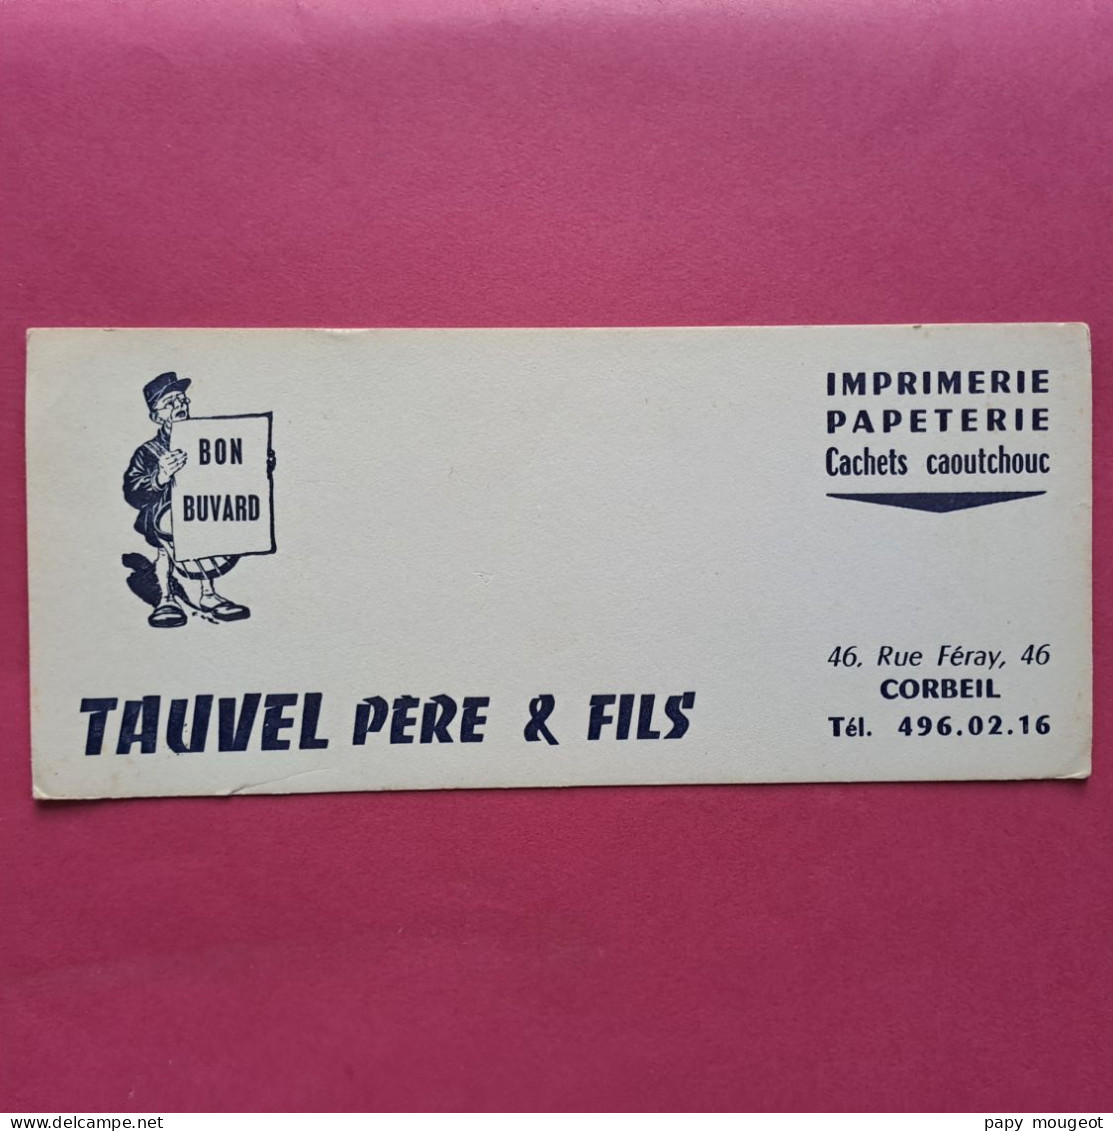 Tauvel Père & Fils Imprimerie Papeterie Cachets Caoutchouc 46, Rue Féray Corbeil - Papeterie